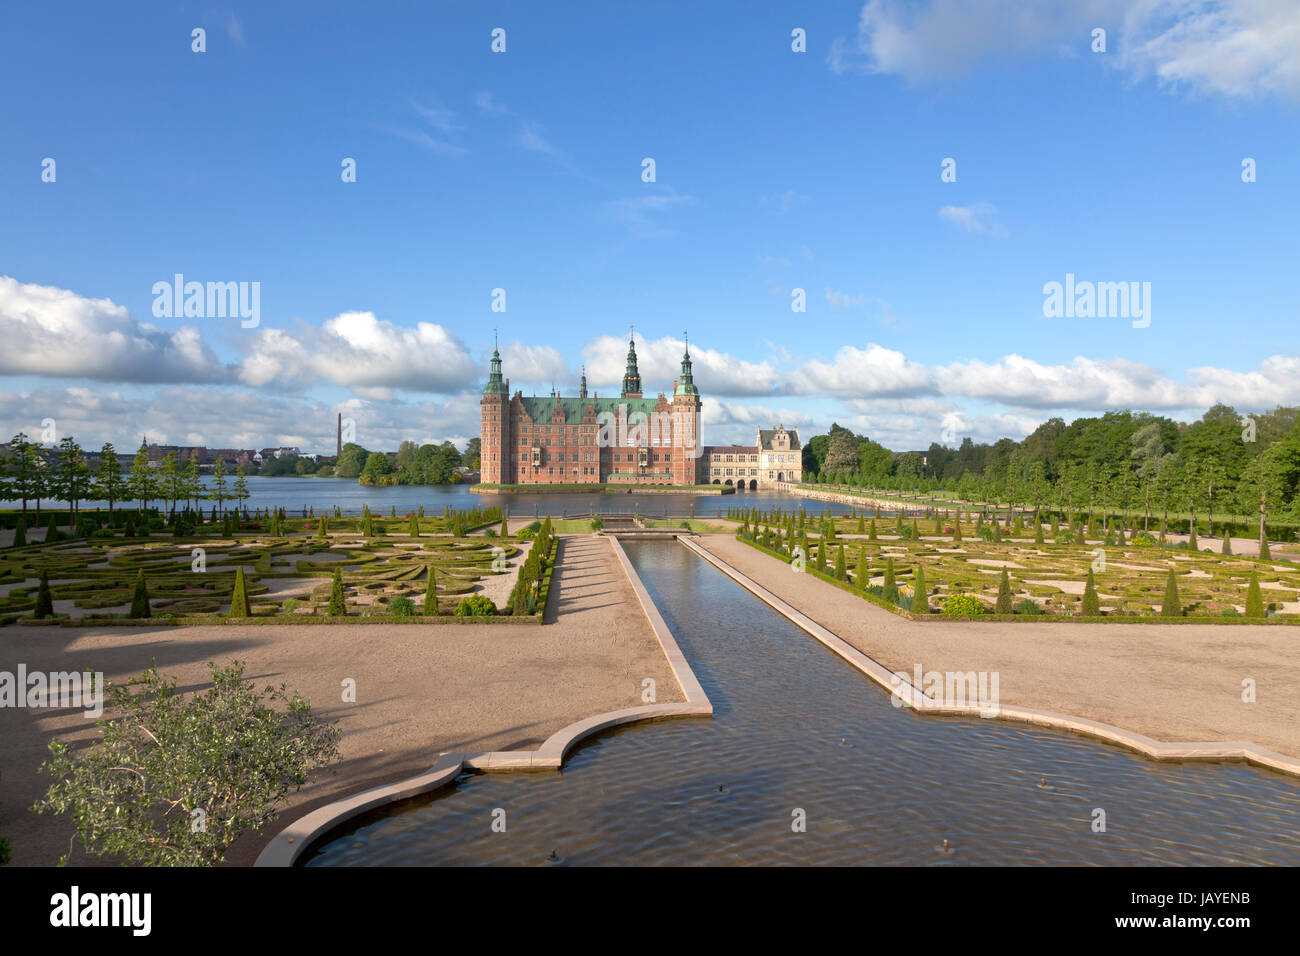 Das Schloss Frederiksborg im niederländischen Renaissance-Stil und der Garten im Stil des Barock und der Kanal der Wasserkaskade in Hillerød, Nordsealand, Dänemark. Stockfoto